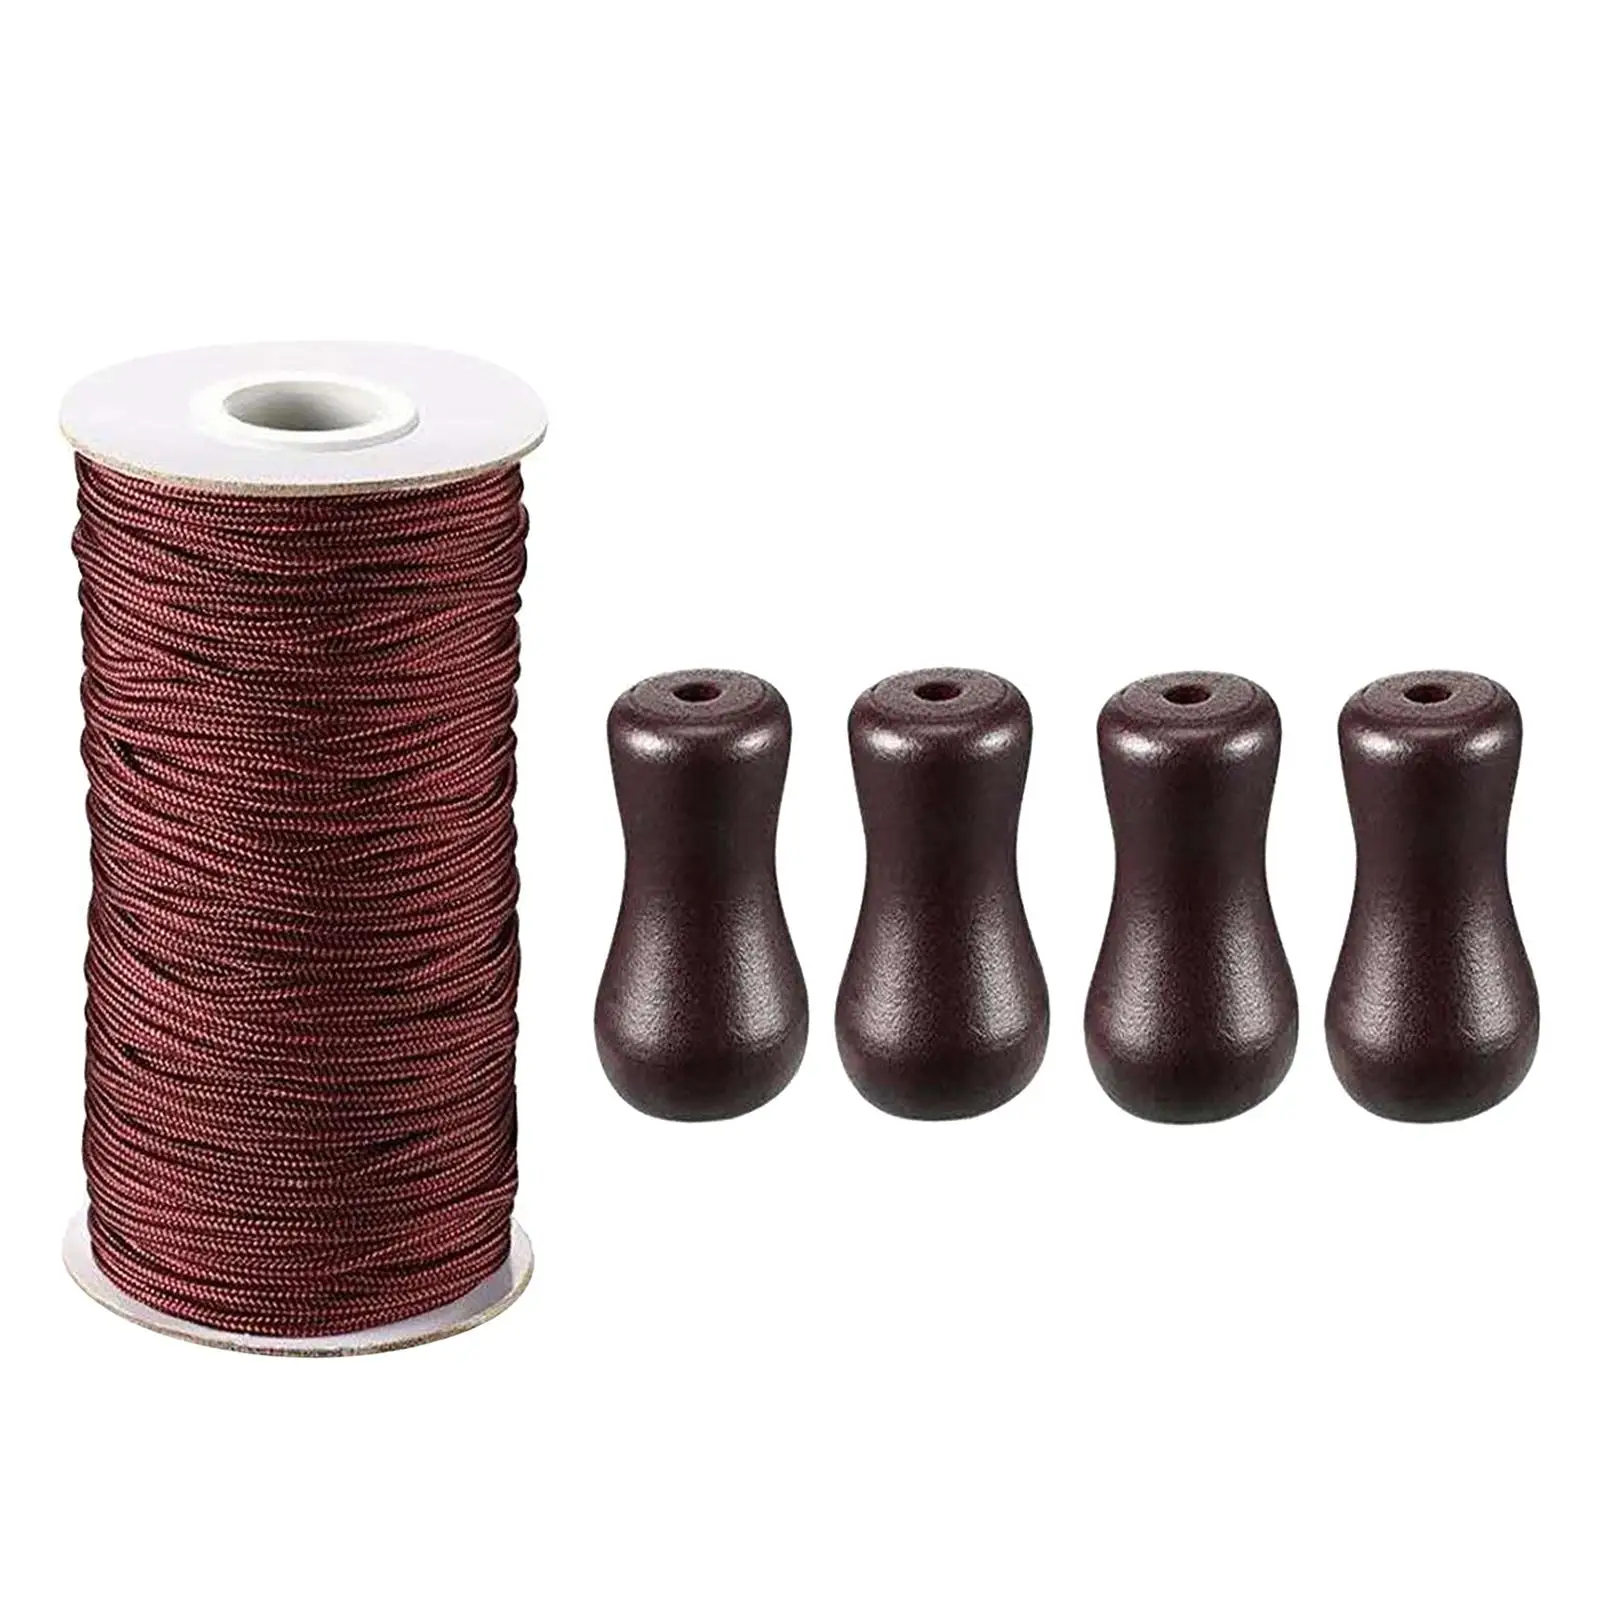 Коричневый плетеный шнур для подъема козырька с 4 подвесками для установки в саду